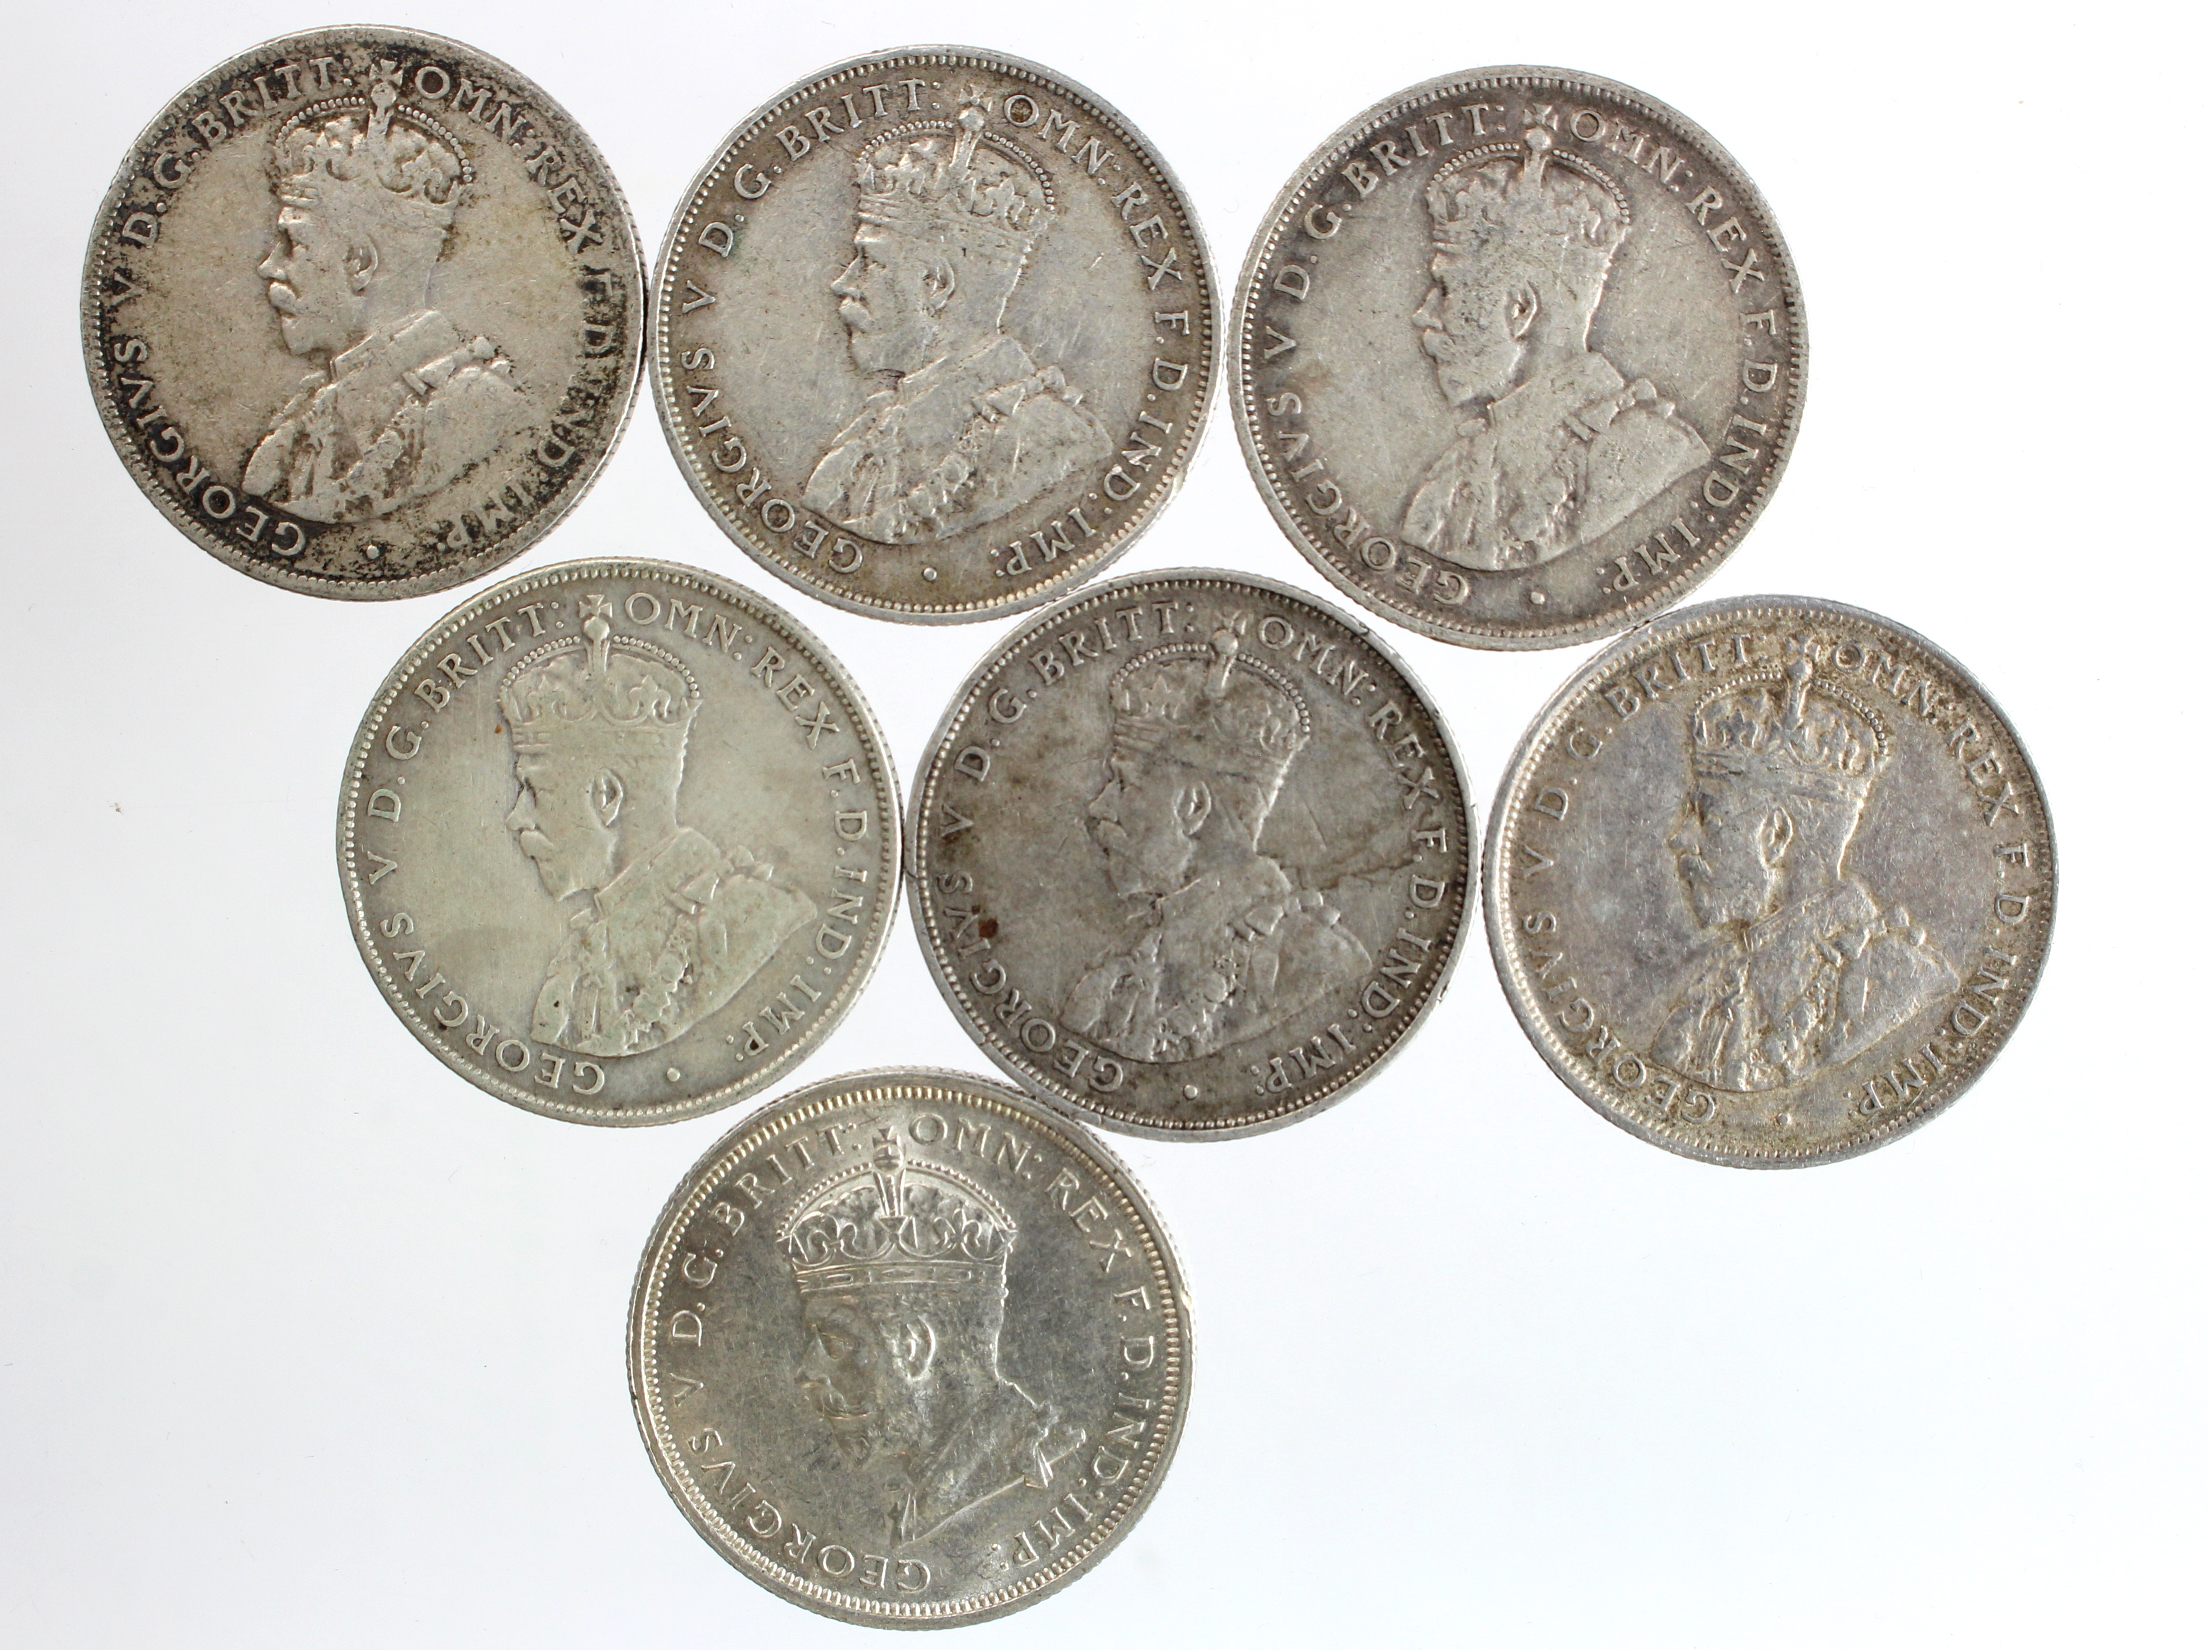 Australia silver Florins (7) 1912-1935 various, F to nEF